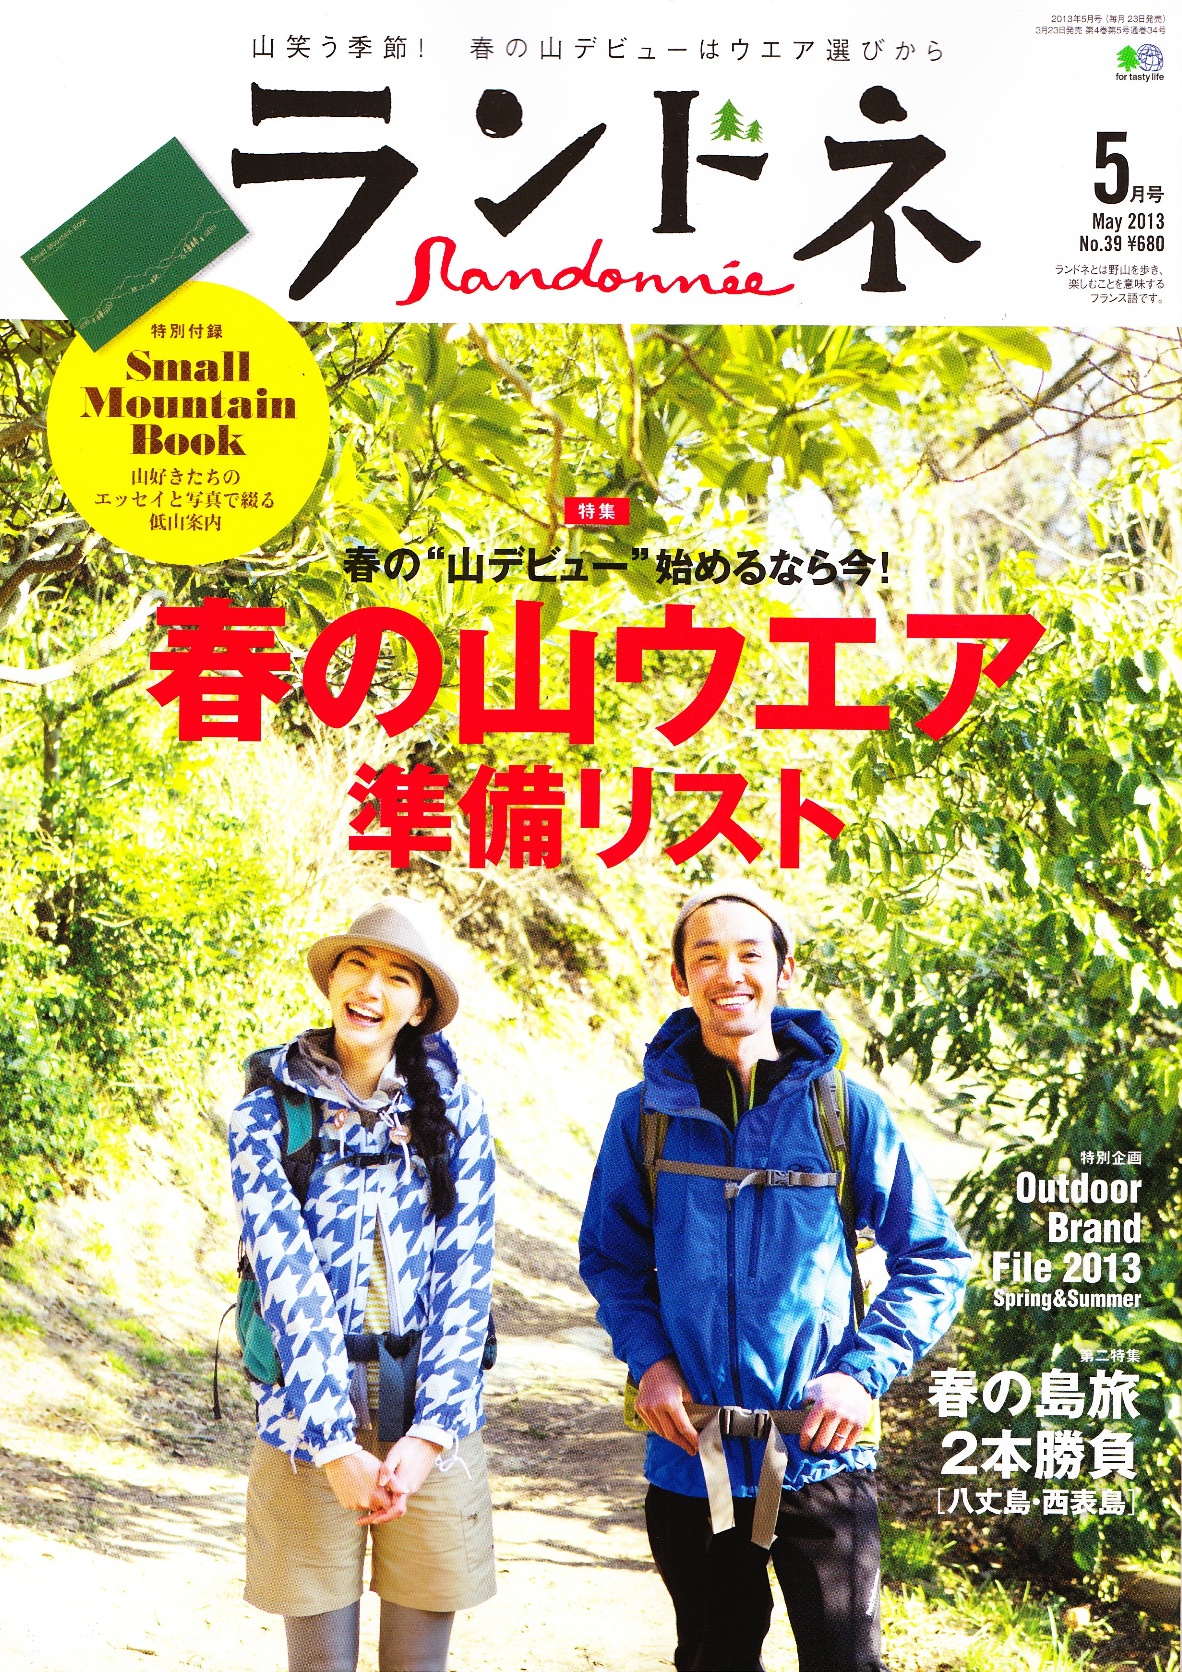 本日発売の『ランドネ』に注目！ Akimamaが取り上げられました。感謝!!! | Akimama - アウトドアカルチャーのニュースサイト